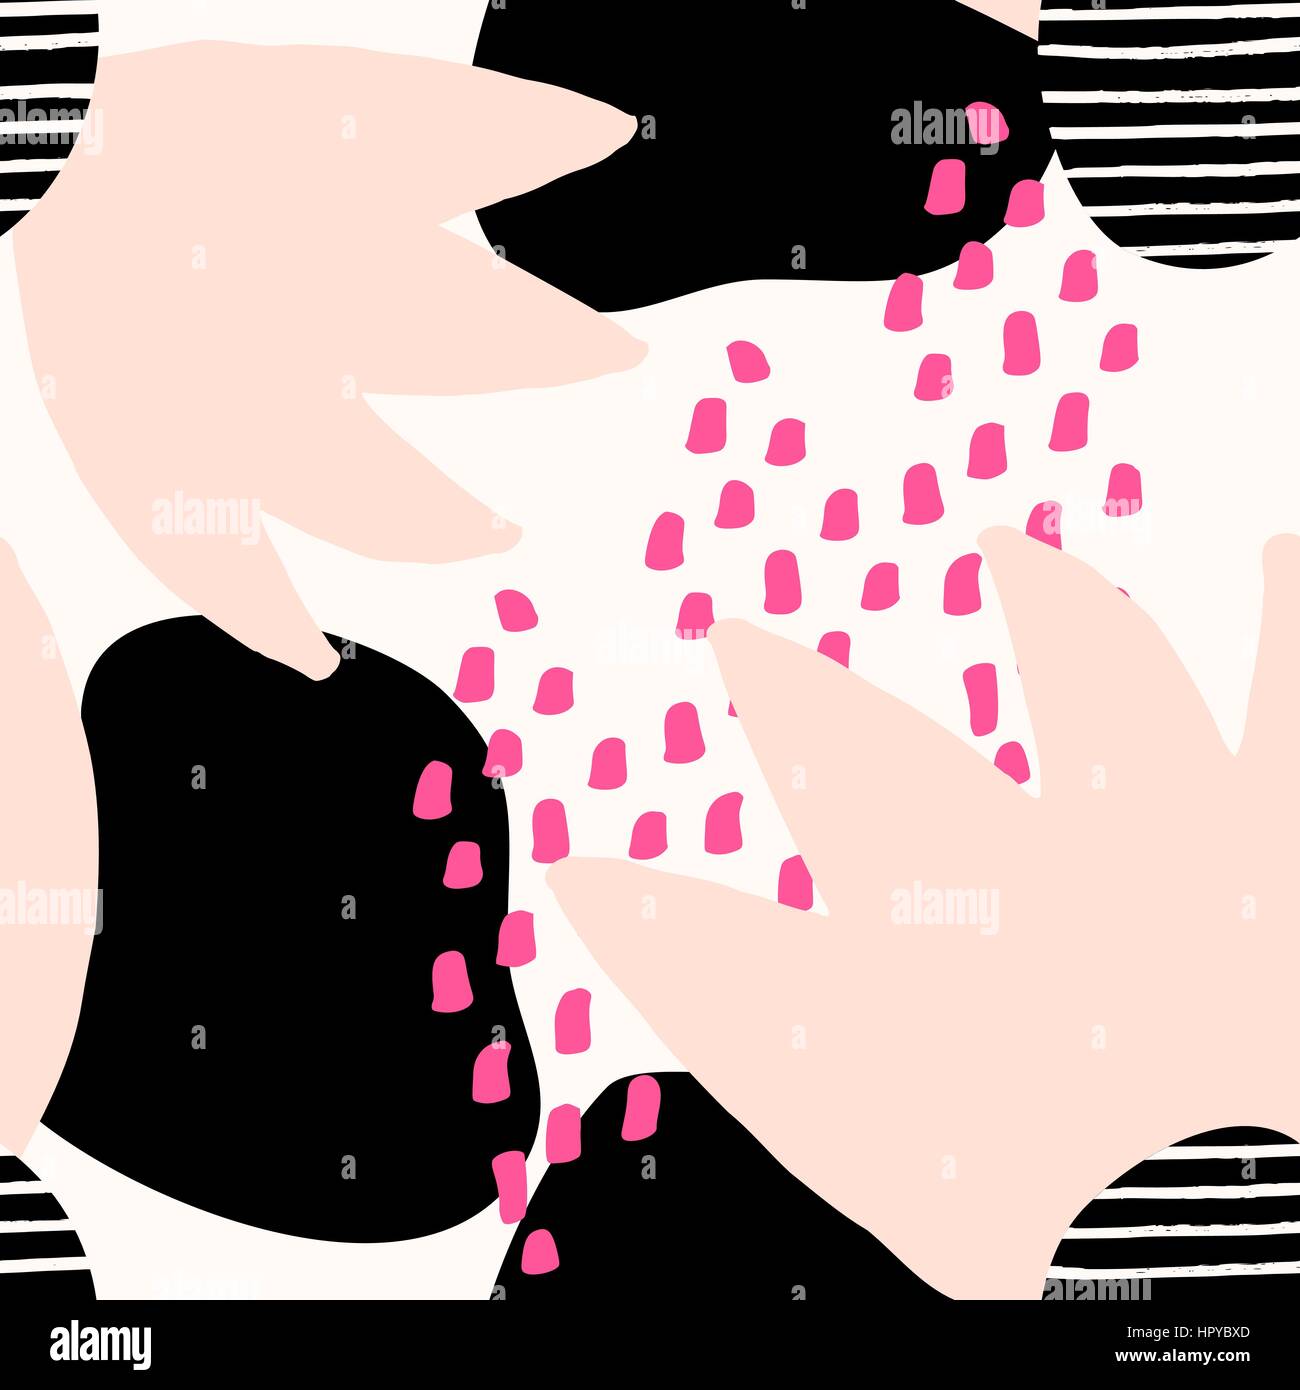 Collage-Stil nahtlose Muster mit abstrakten und organische Formen in Pastell rosa, Pink, schwarz und Creme. Moderne und originelle Textile Umhüllung Stock Vektor